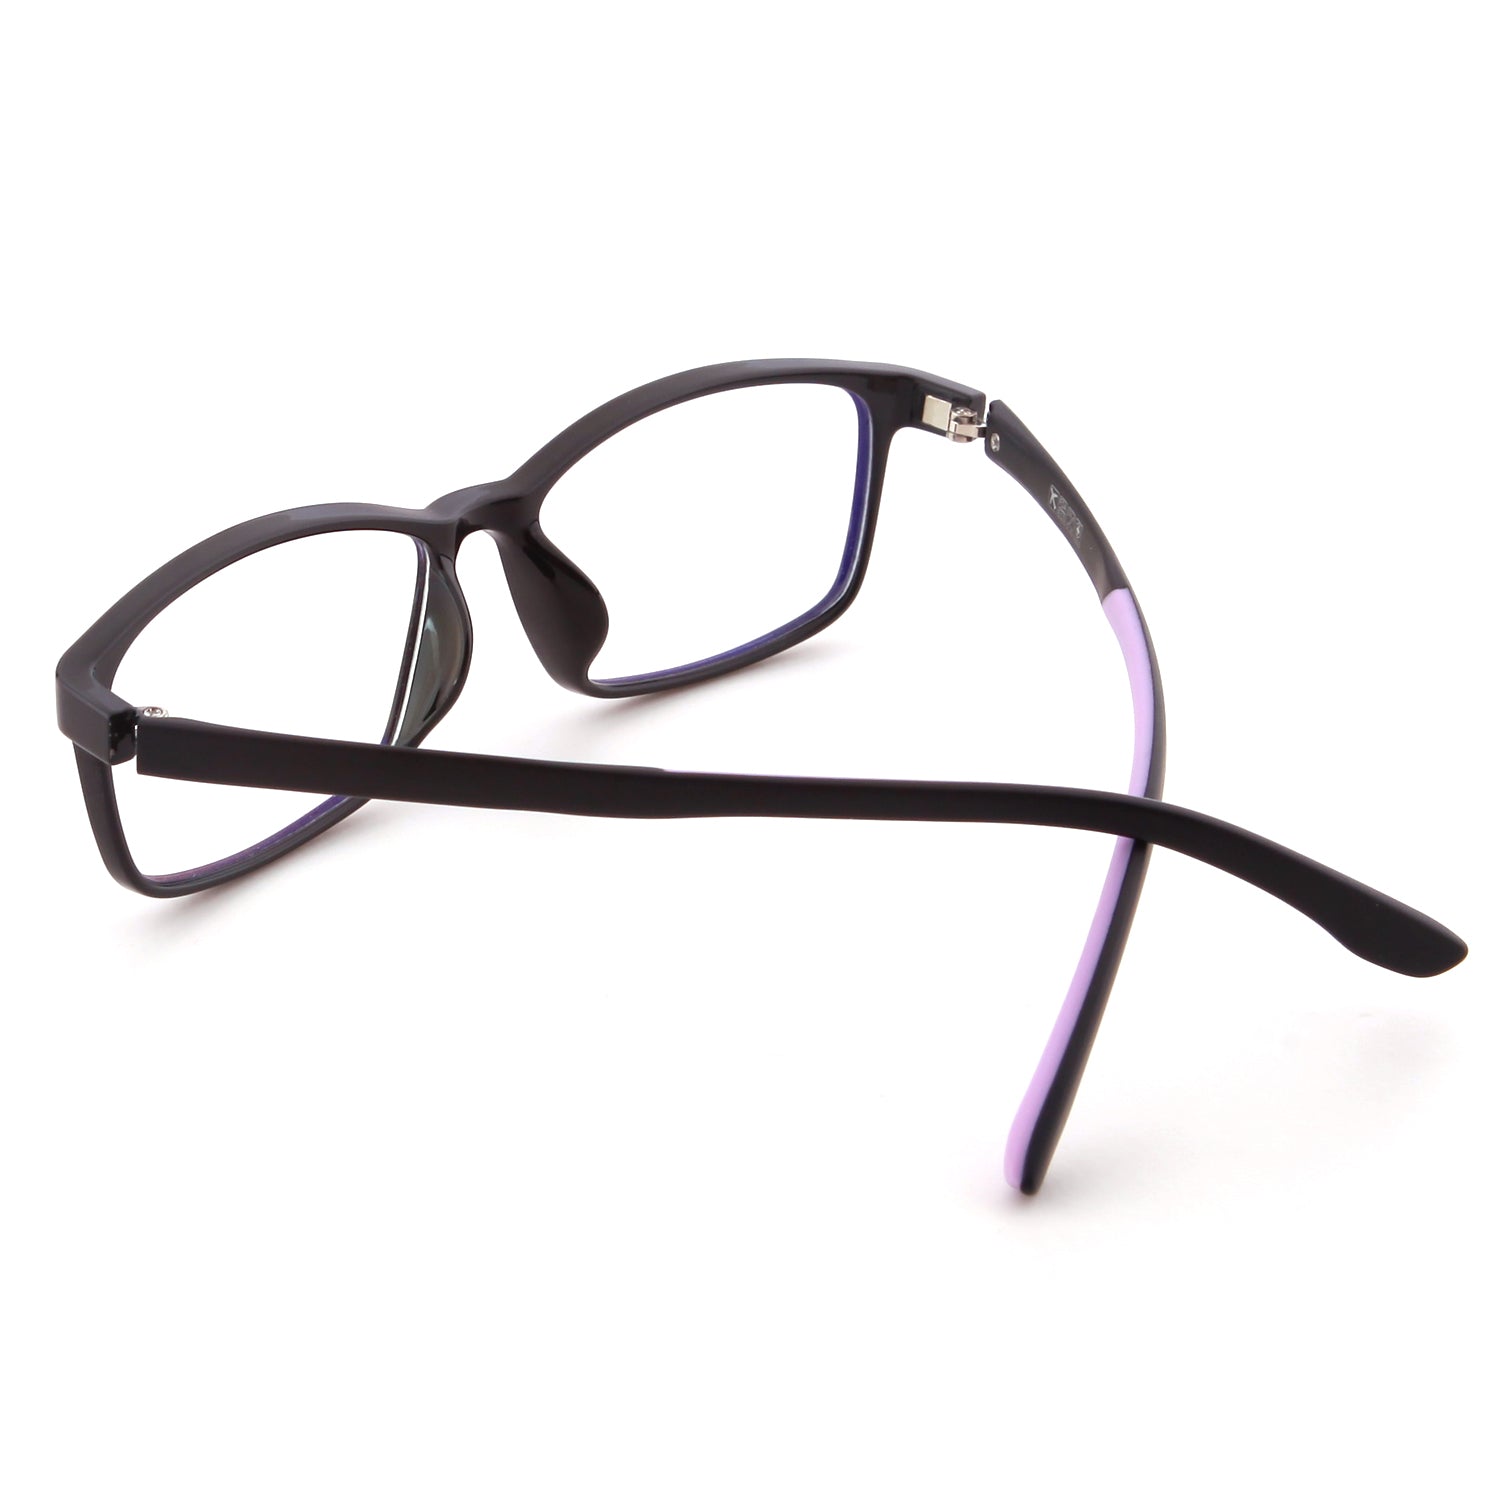 Mind Bridge Big Kids and Teens Computer Glasses (Black Purple) - CrystalHillGlasses.com